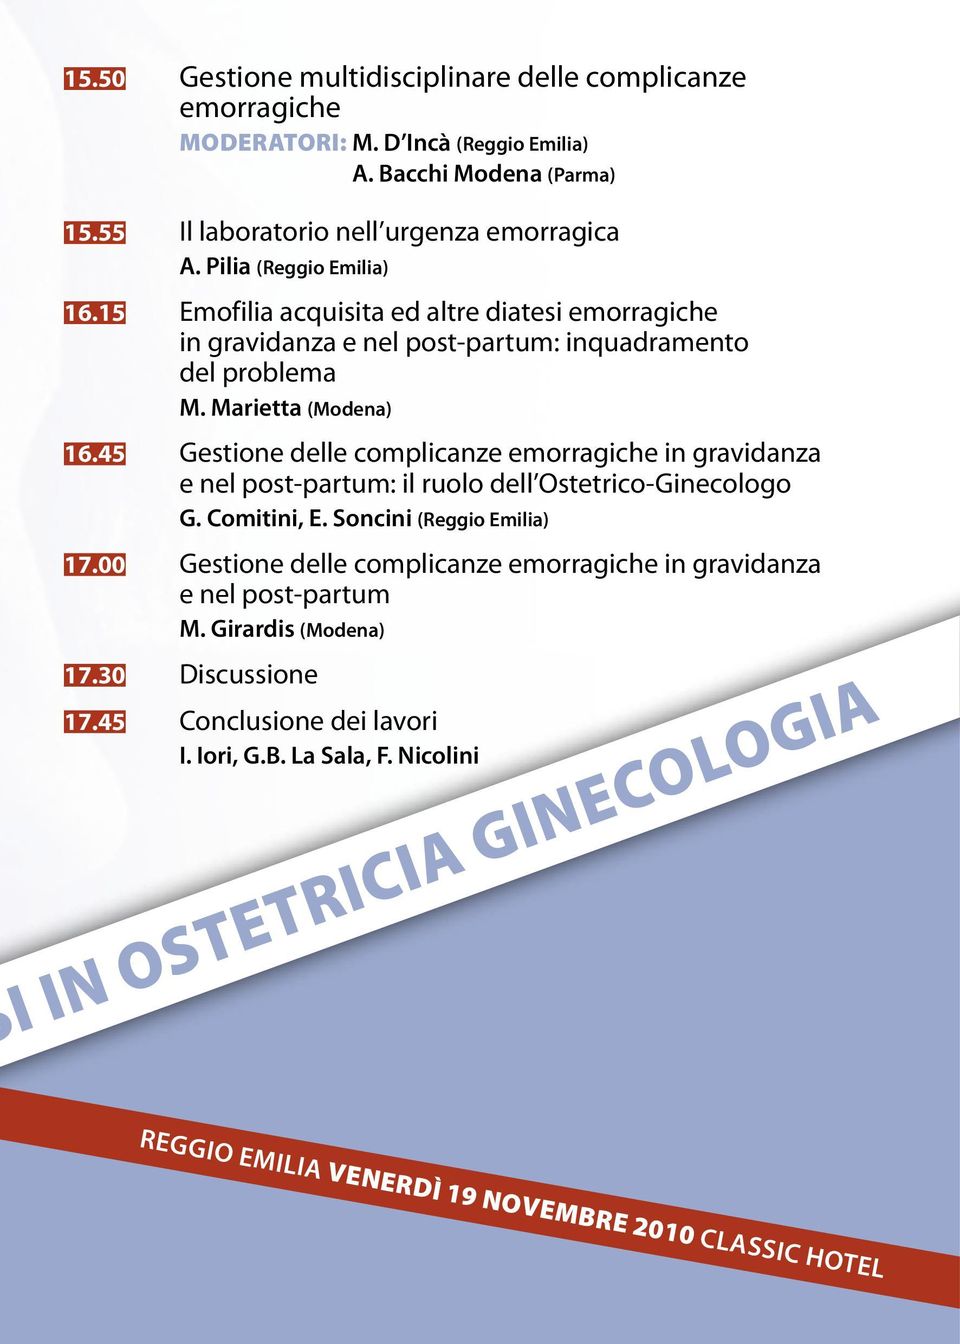 45 Gestione delle complicanze emorragiche in gravidanza e nel post-partum: il ruolo dell Ostetrico-Ginecologo G. Comitini, E. Soncini (Reggio Emilia) 17.